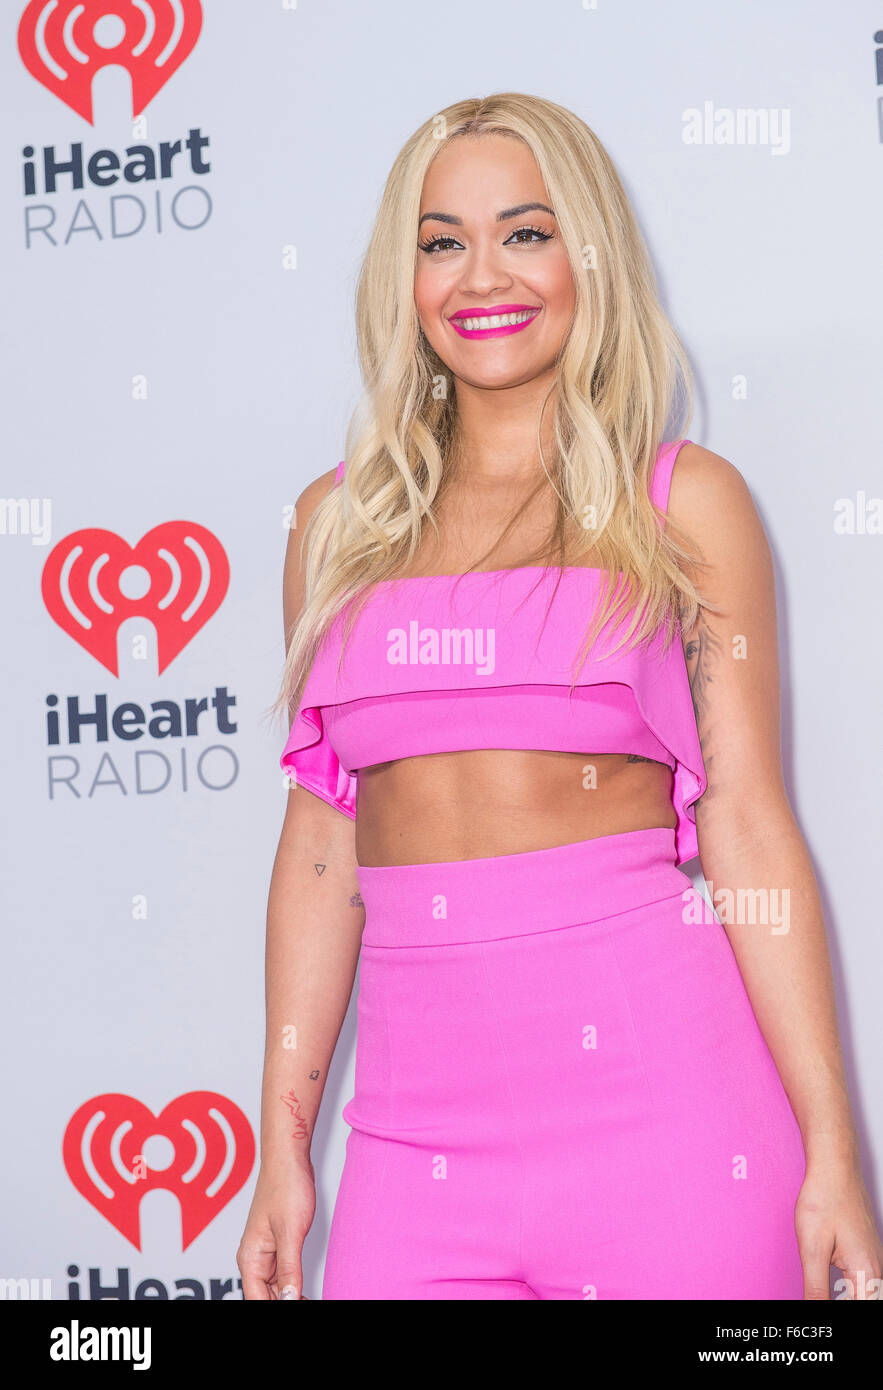 Singer Rita Ora attends the 2015 iHeartRadio Music Festival in Las Vegas Stock Photo